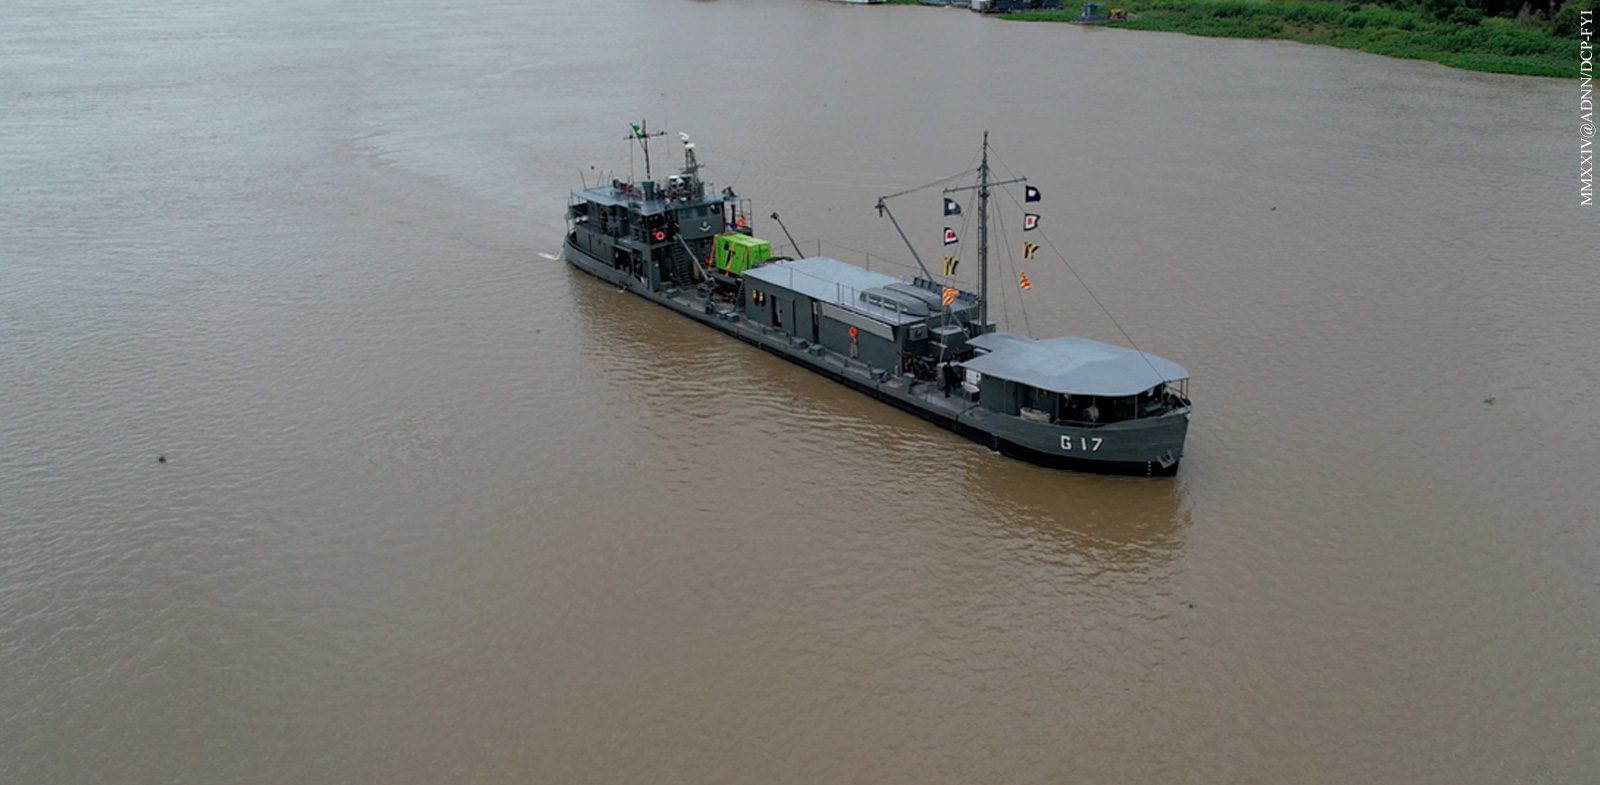 Brazilian Navy ships bring health to Pantanal riverside communities